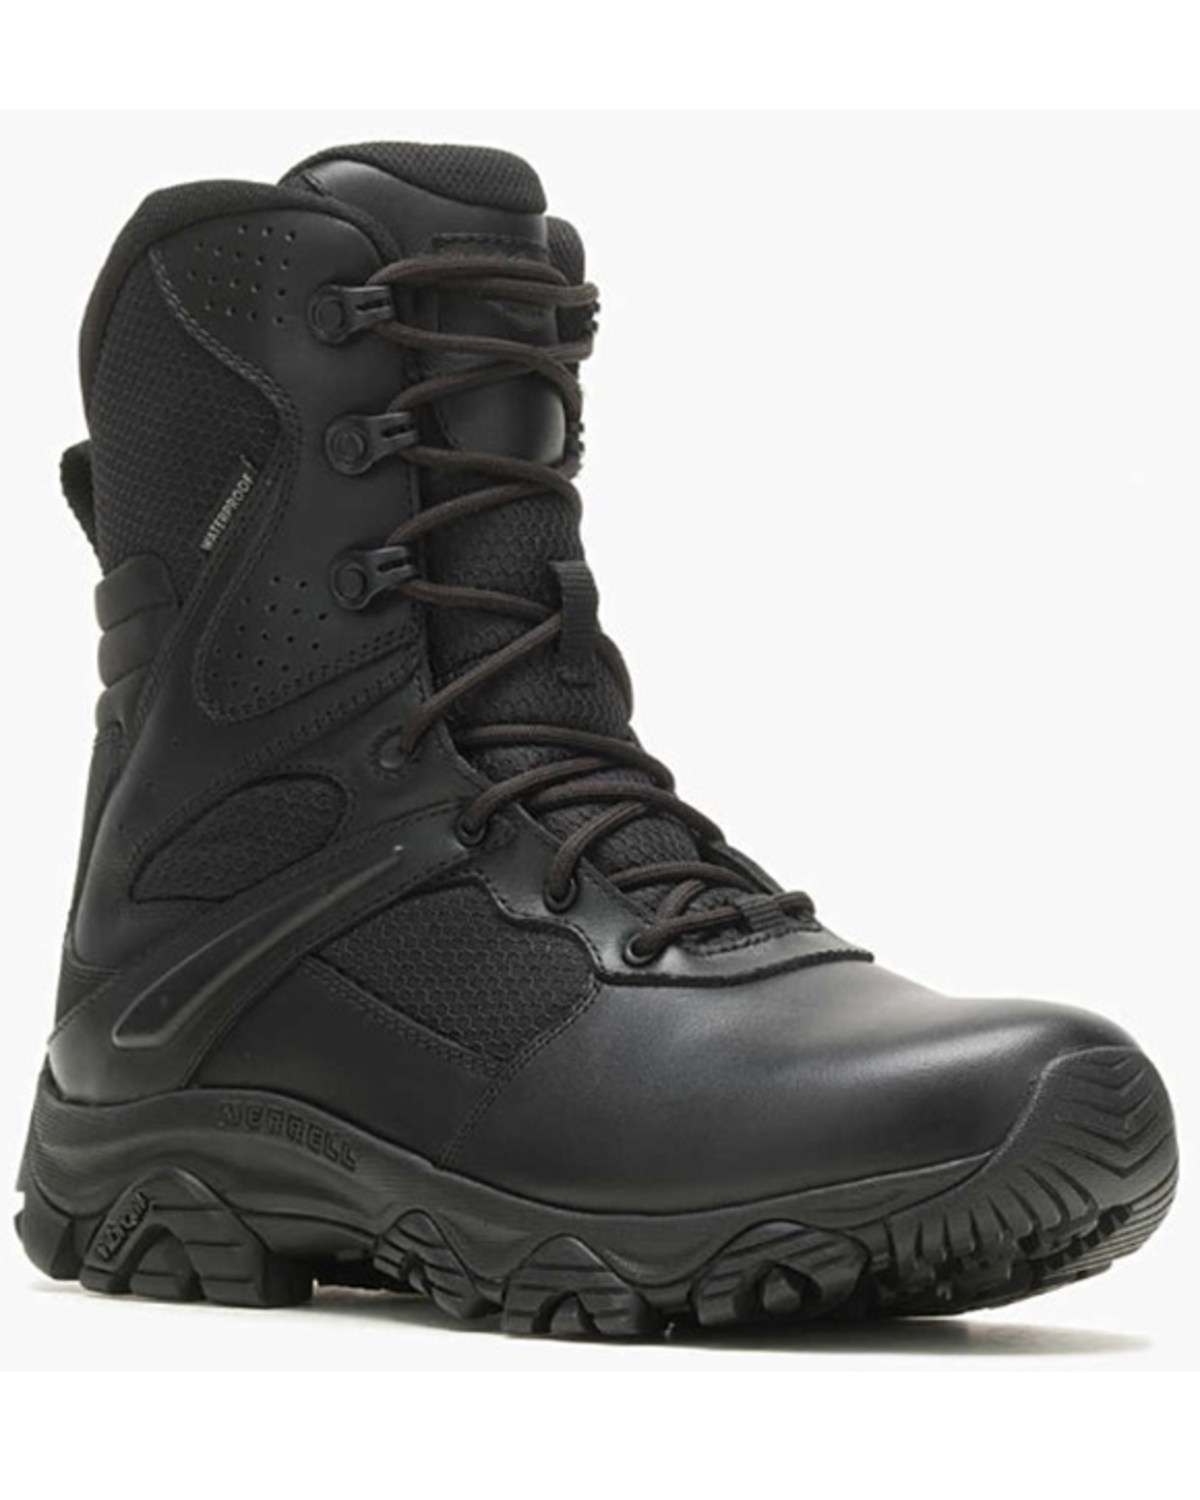 Merrell Men's Moab 3 8" Tactical Response Zip Waterproof Boots - Round Toe